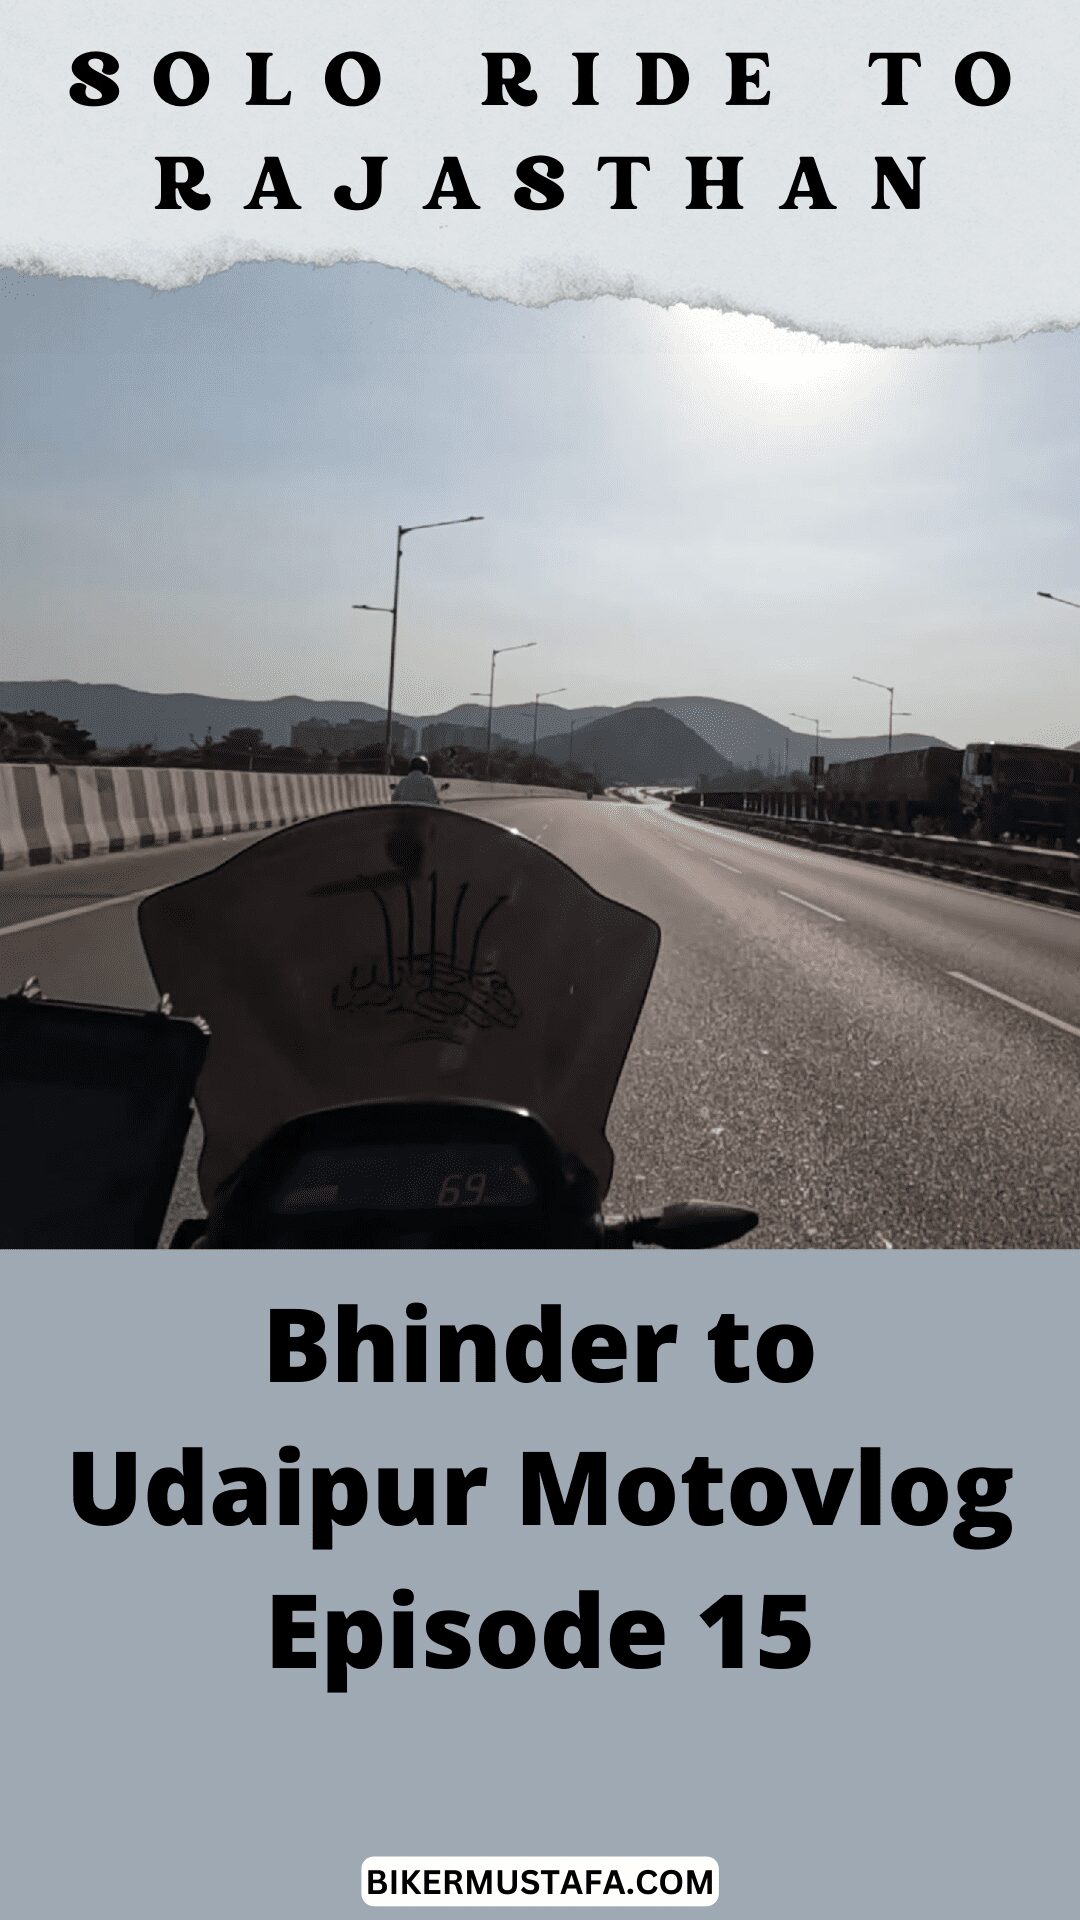 Rajasthan Ride Bhinder to Udaipur Motovlog Episode 15